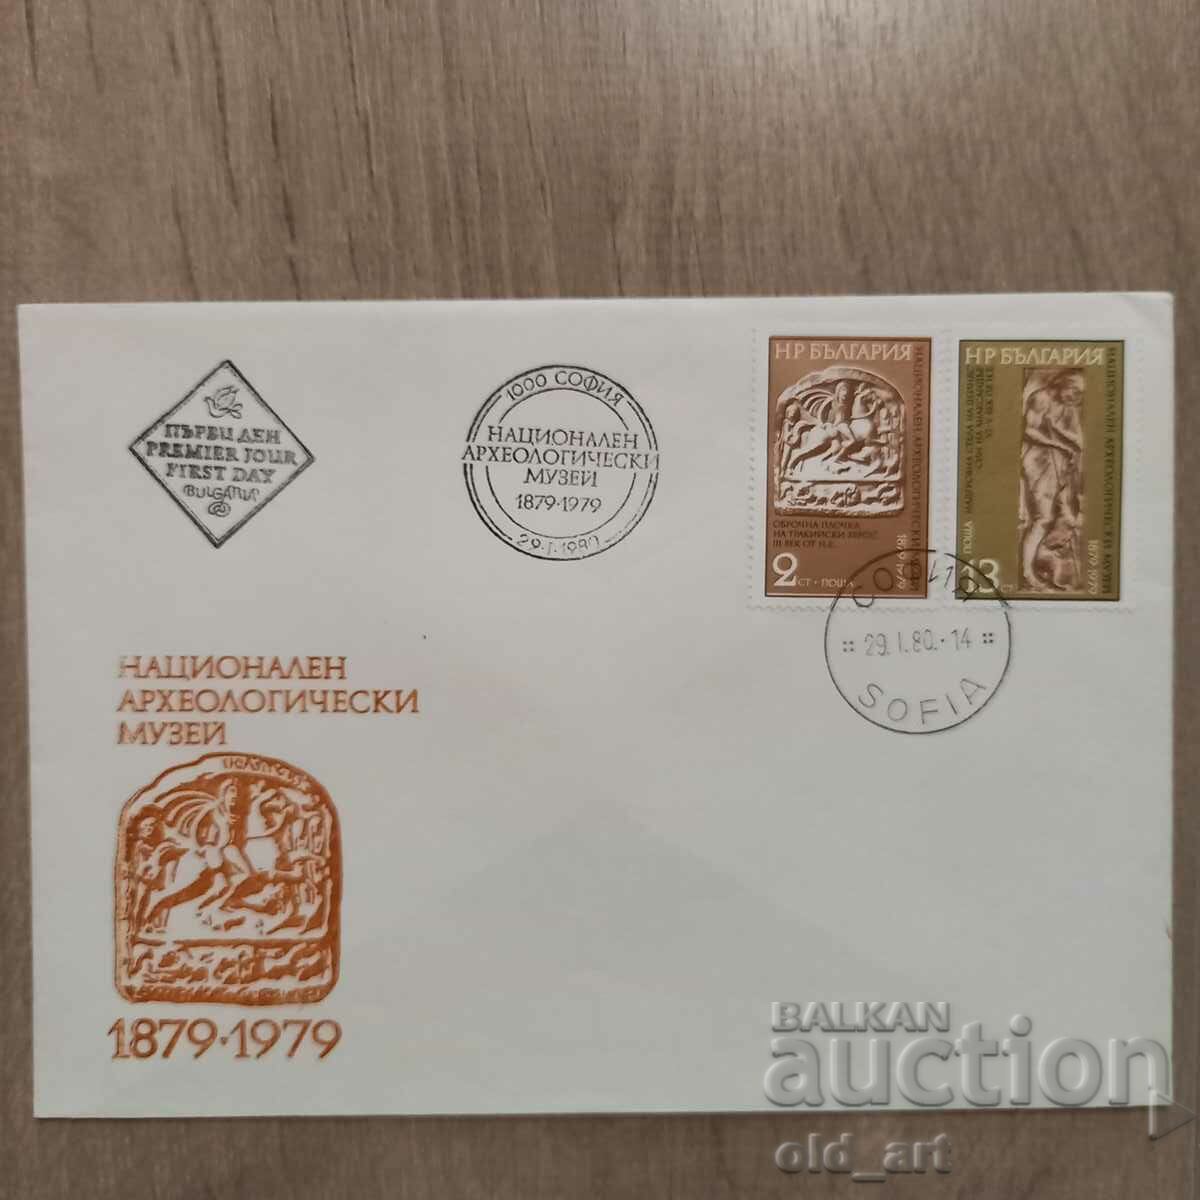 Ταχυδρομικός φάκελος - 100 χρόνια Εθνικό Αρχαιολογικό Μουσείο